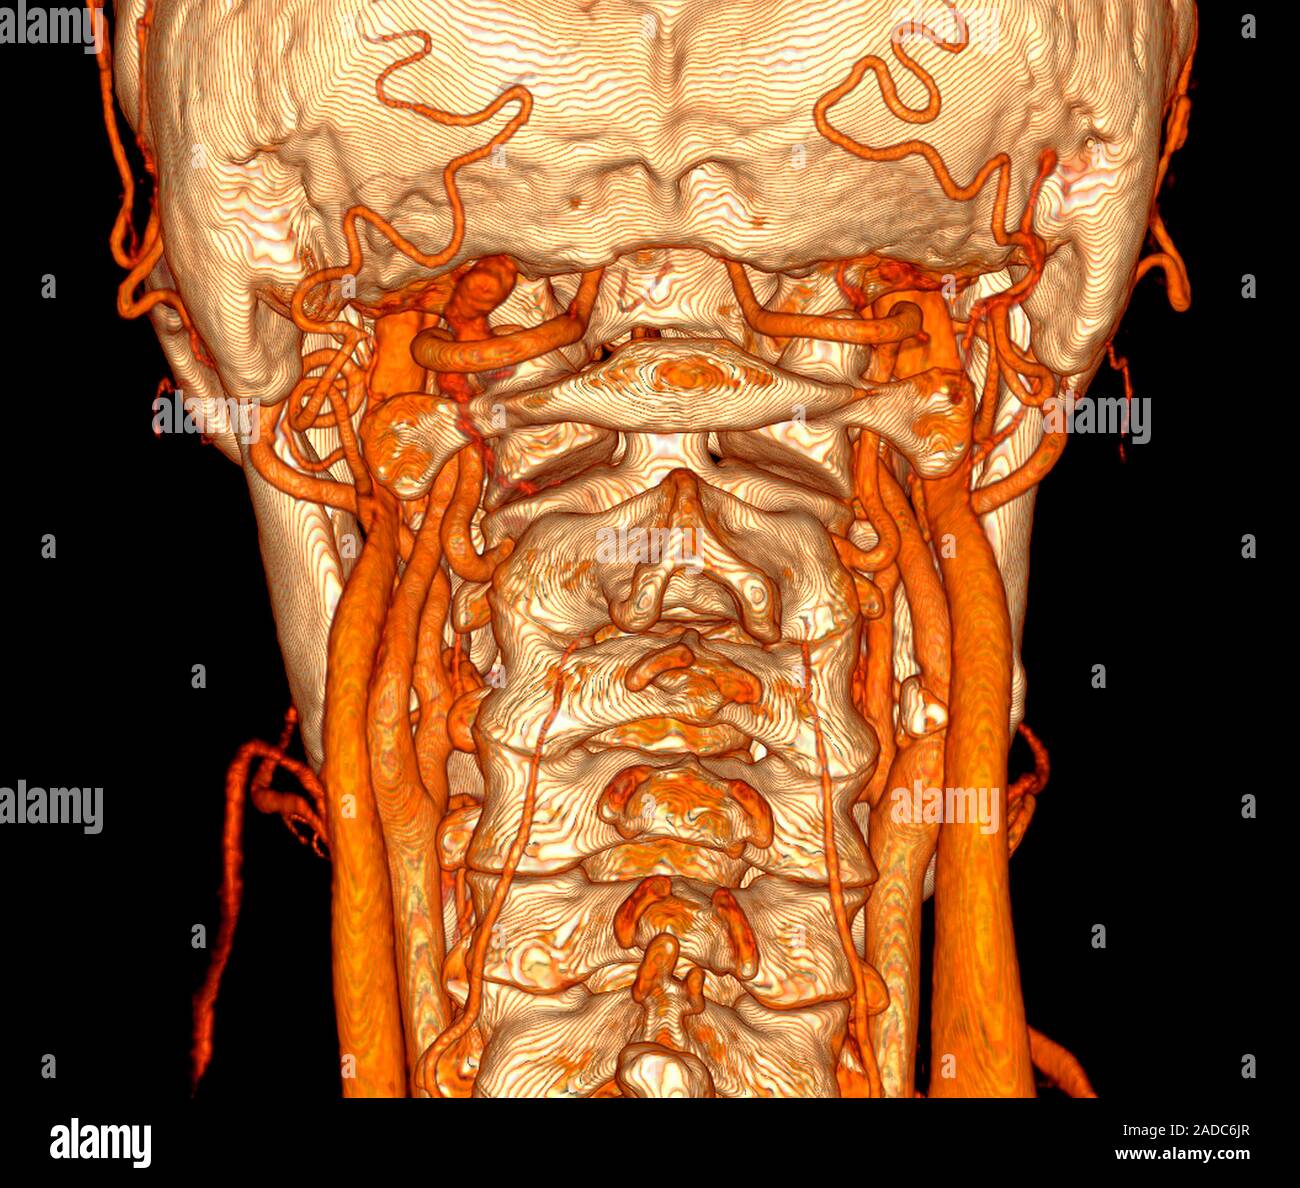 Los vasos sanguíneos del cuello. 3D mejorado digitalmente la tomografía  computarizada (TC) de un cuello humano y sus vasos sanguíneos, mostrando  también los huesos de la columna cervical Fotografía de stock -